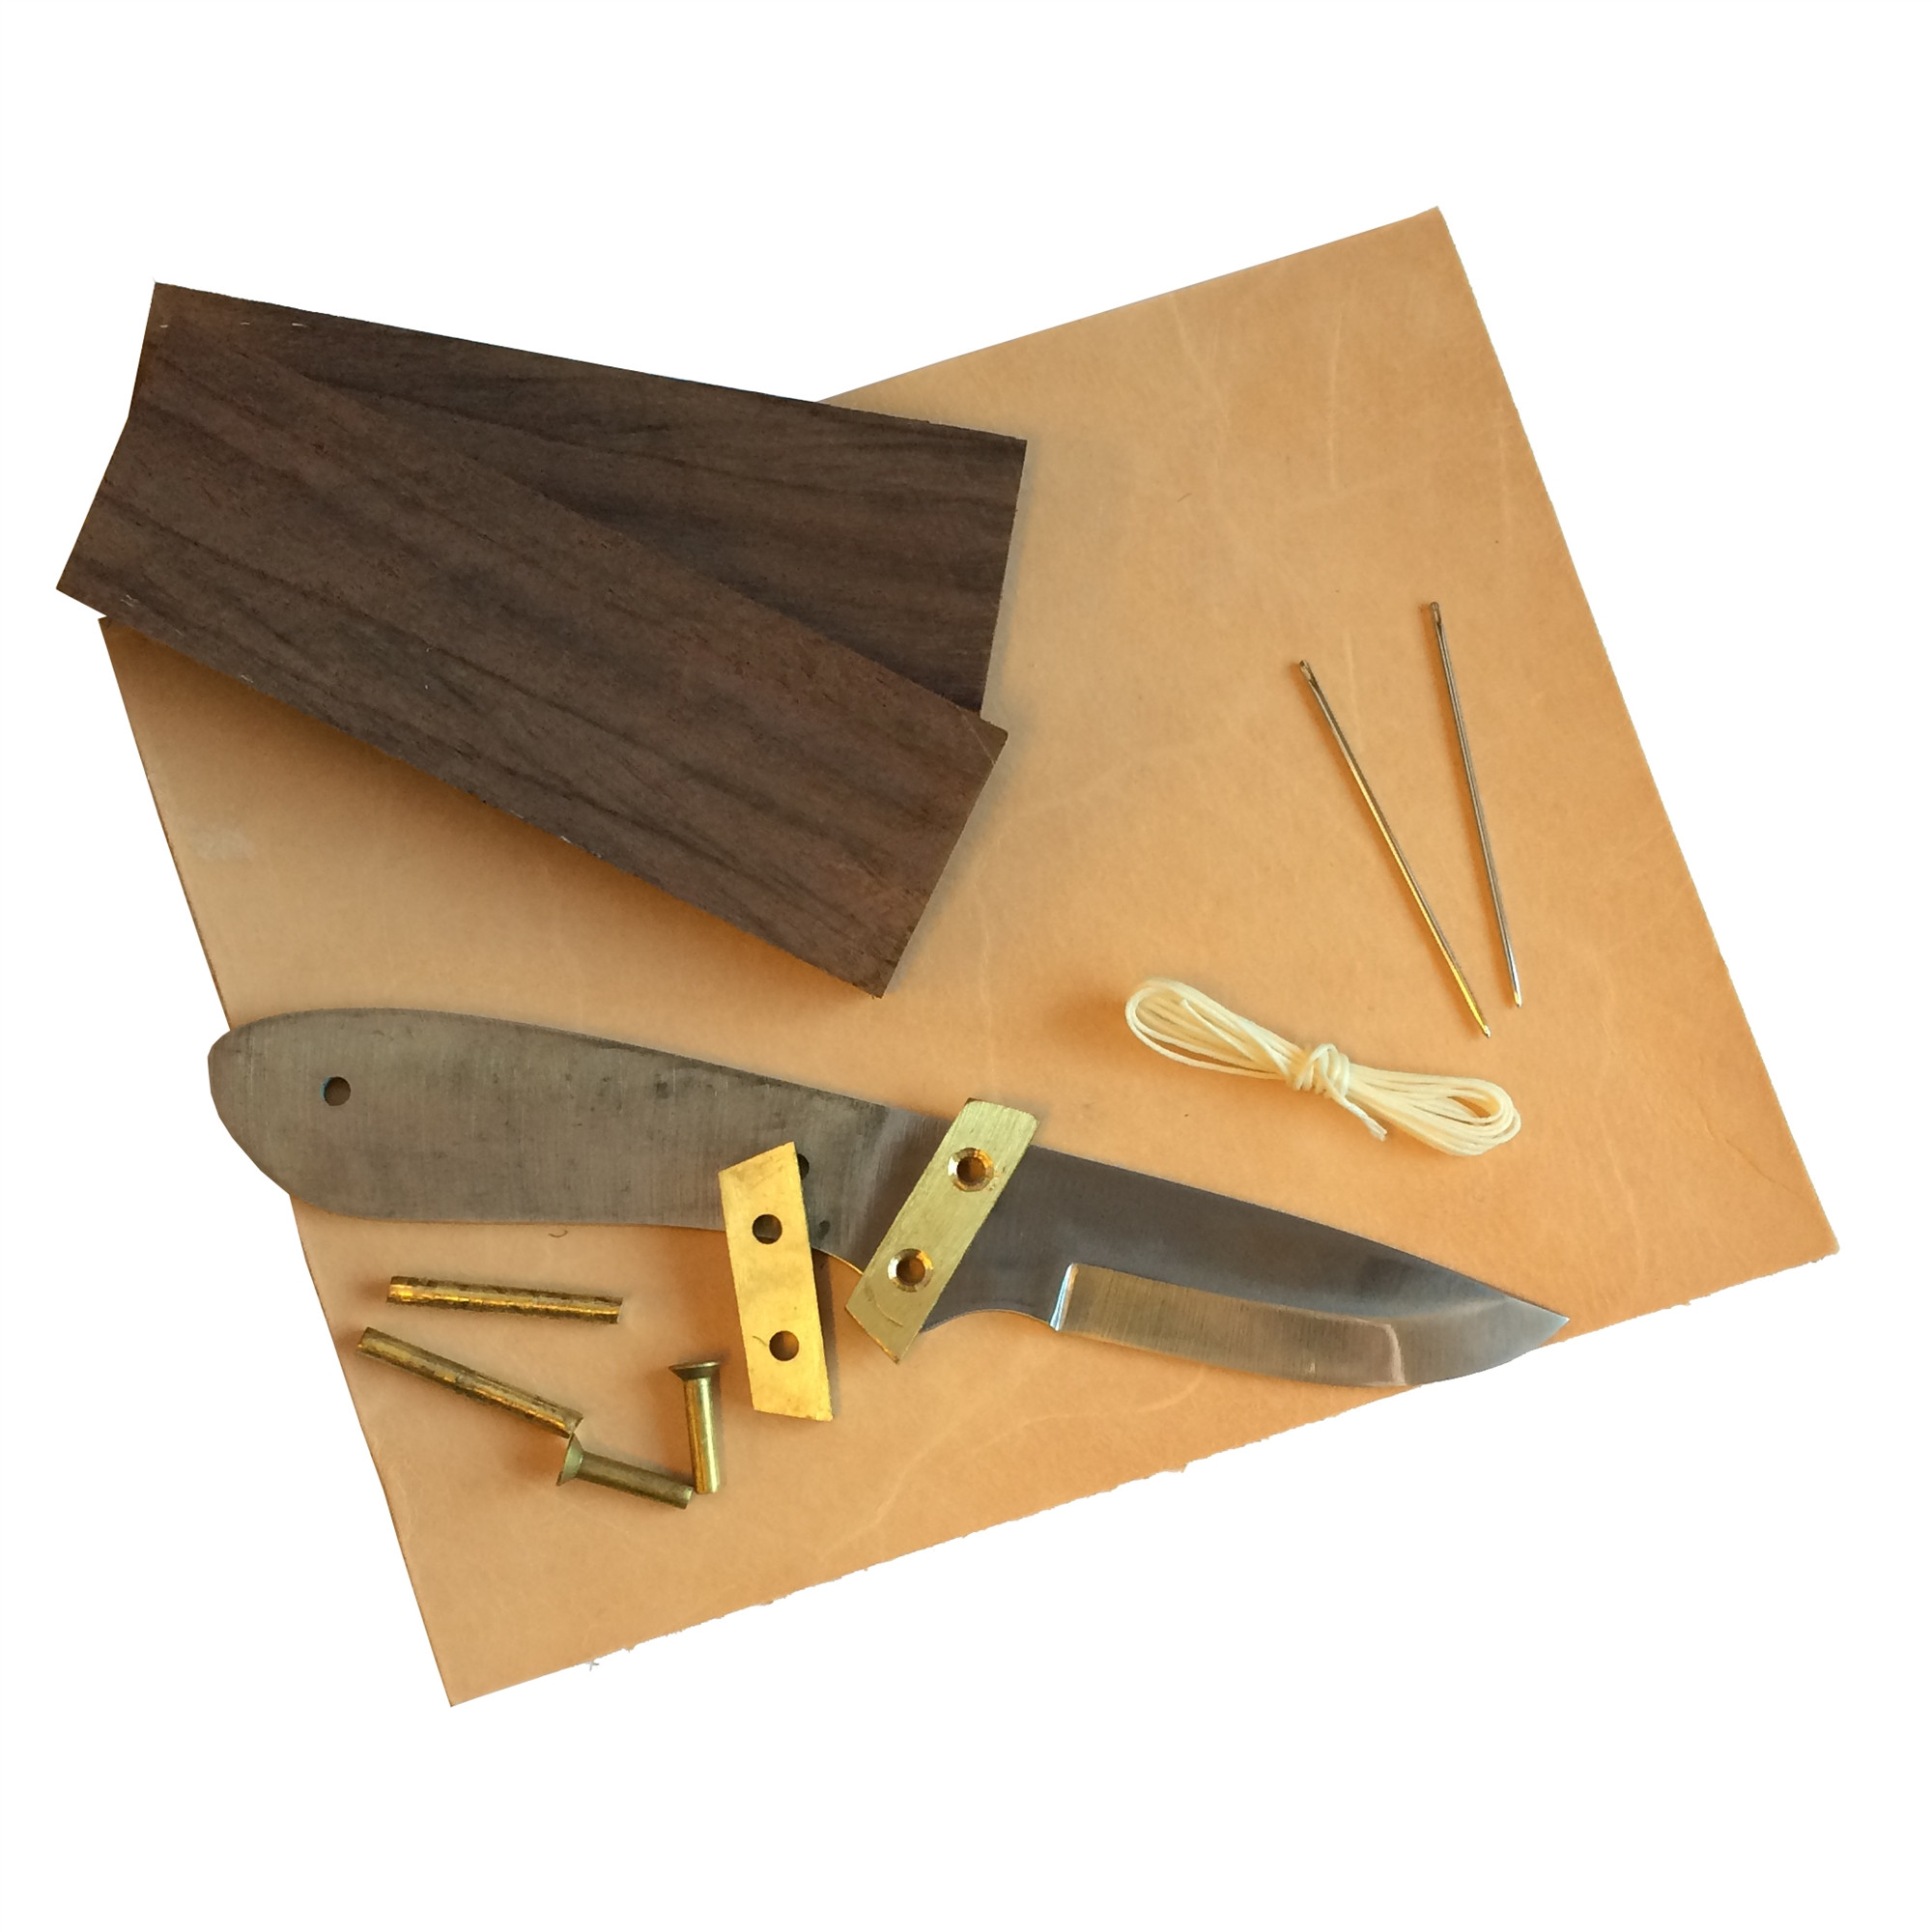 DIY Knife Making Kit
 DIY knife kit 2 Full tang knife